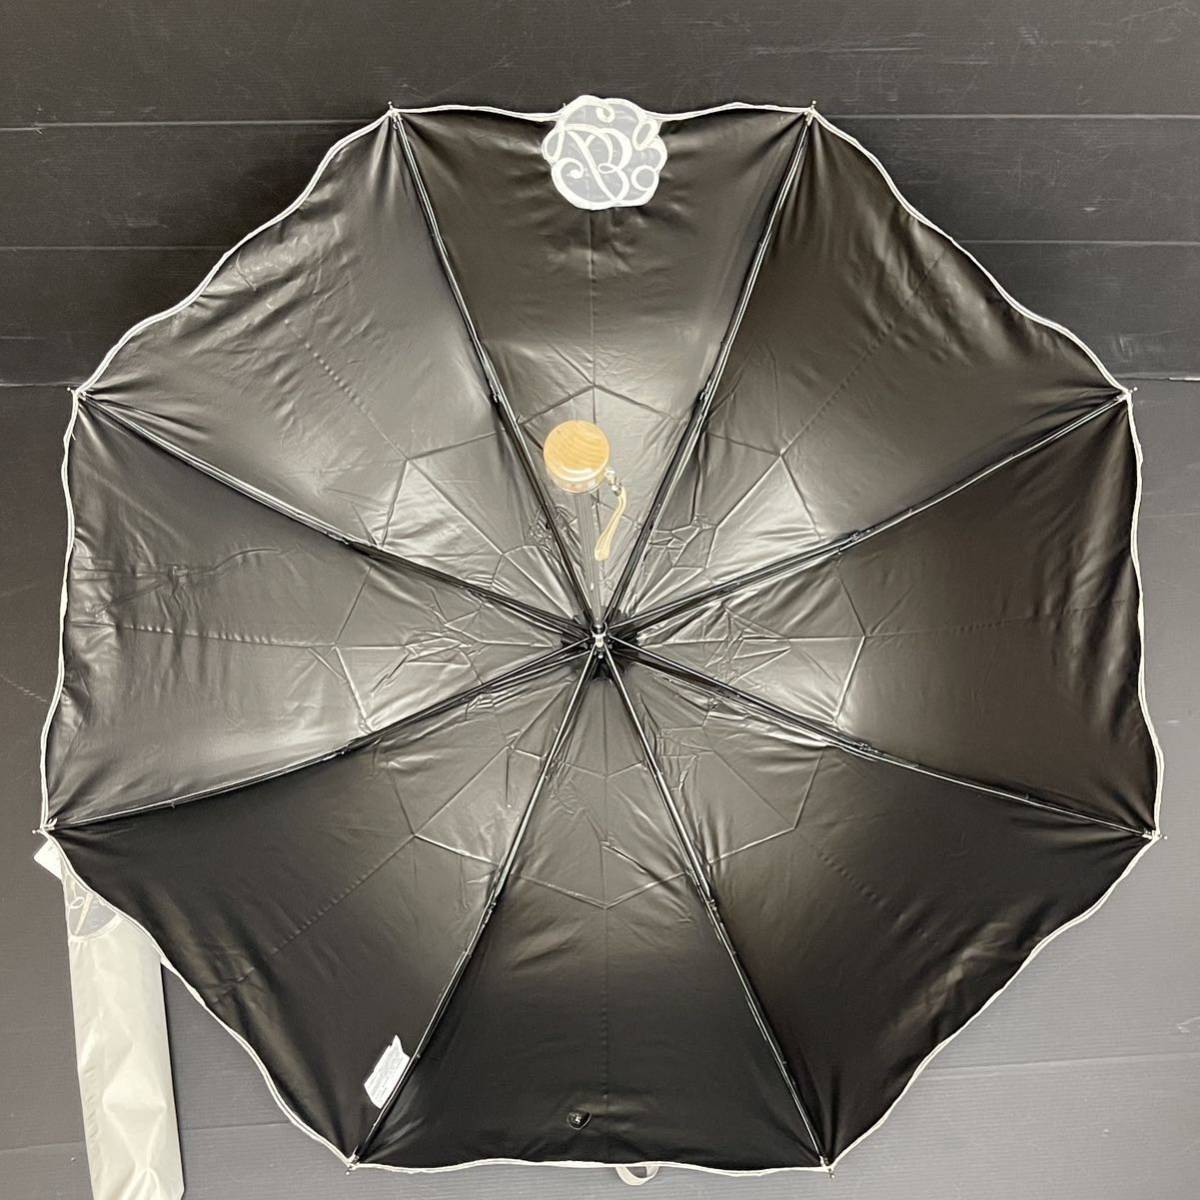  новый товар 51889 Blaoblao* светло-серый бур nji- Mark вышивка 1 класс затемнение . дождь двоякое применение складной зонт от солнца зонт от дождя легкий UV обработка .... верх Flat 